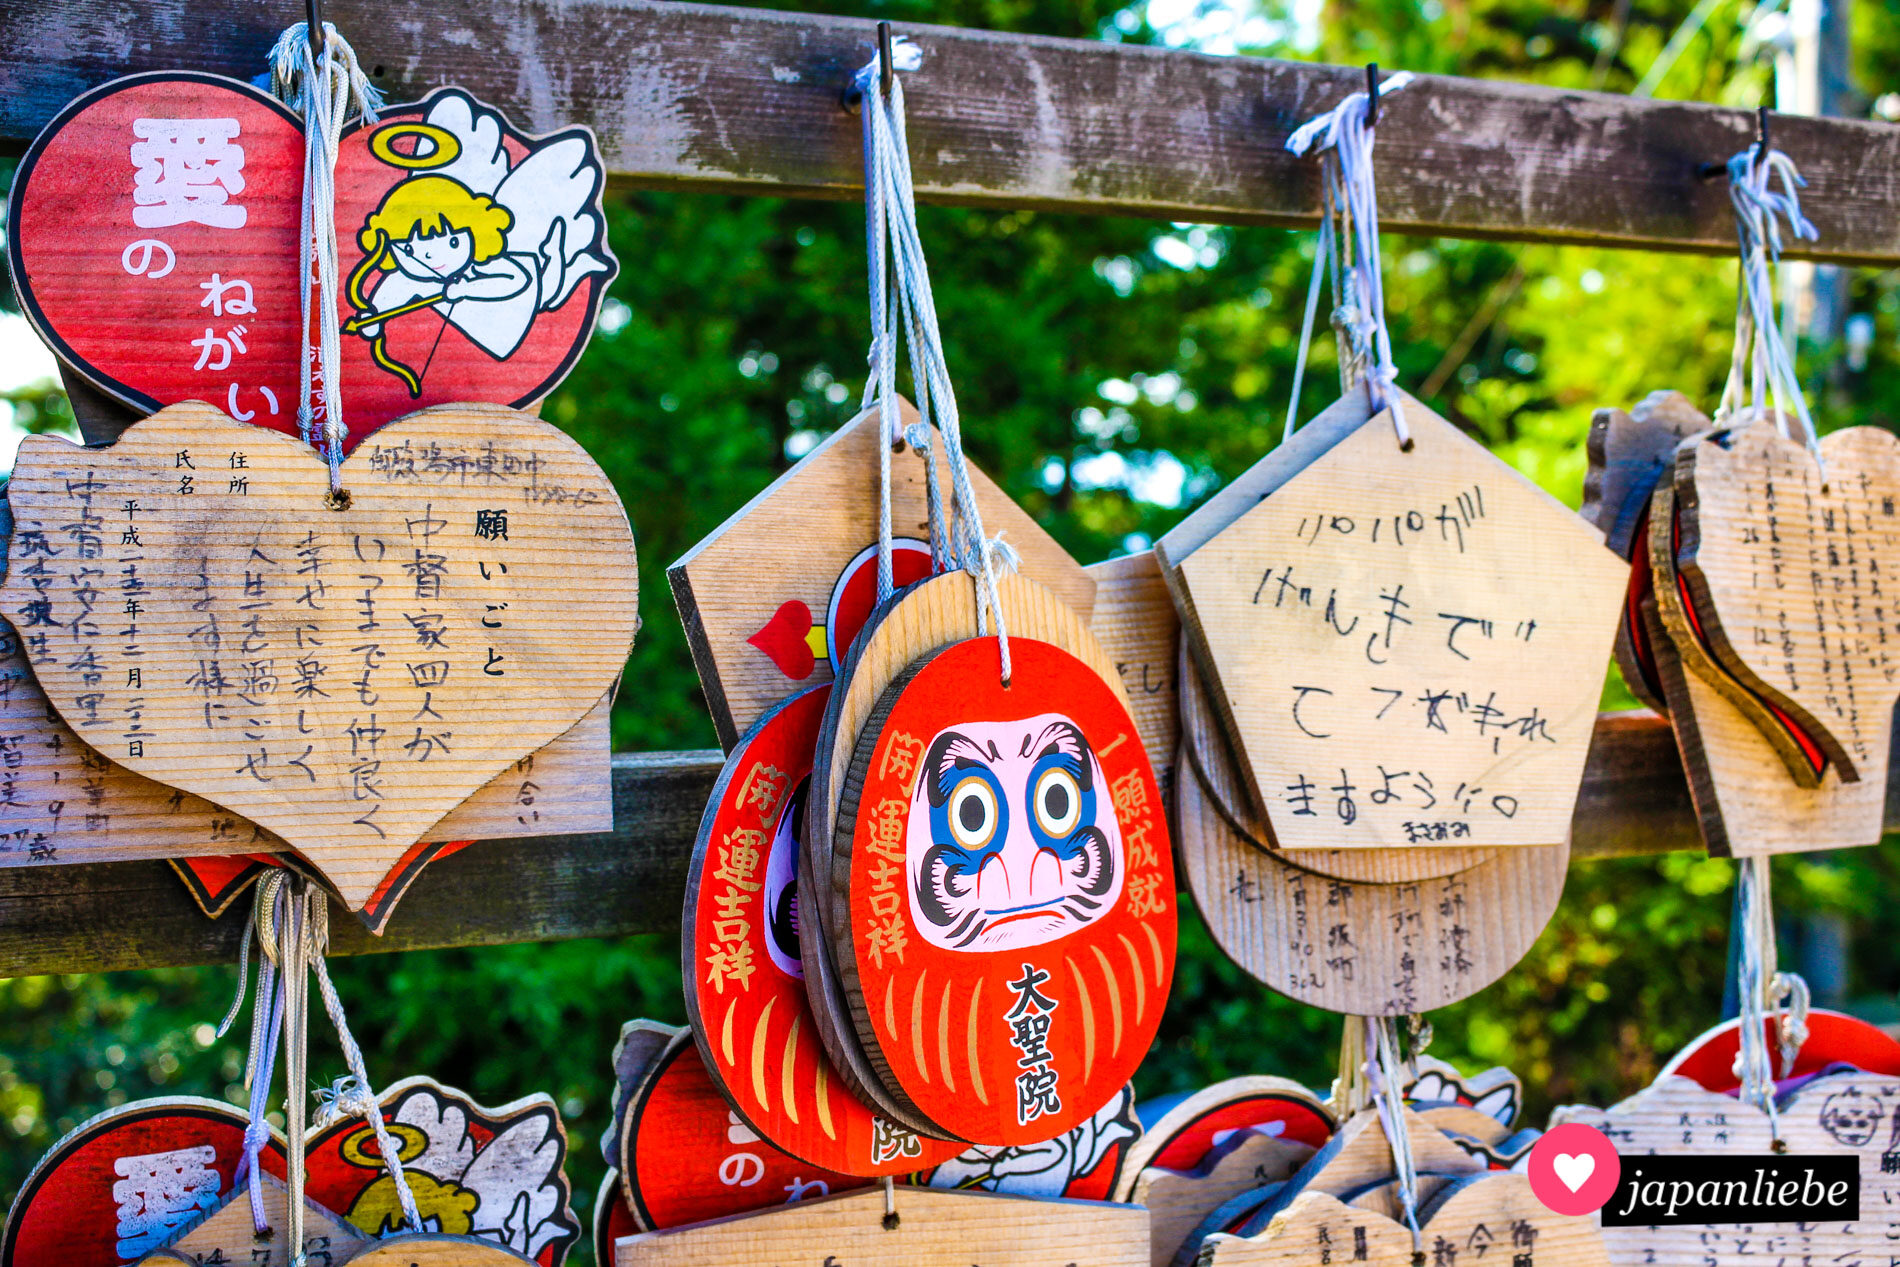 Am Misenhondo-Tempel auf Miyajima zeigen ema-Wunschtafeln eine Mischung aus Amor und Engelchen. Buddhismus trifft auf westlich-christliche Mythologie.